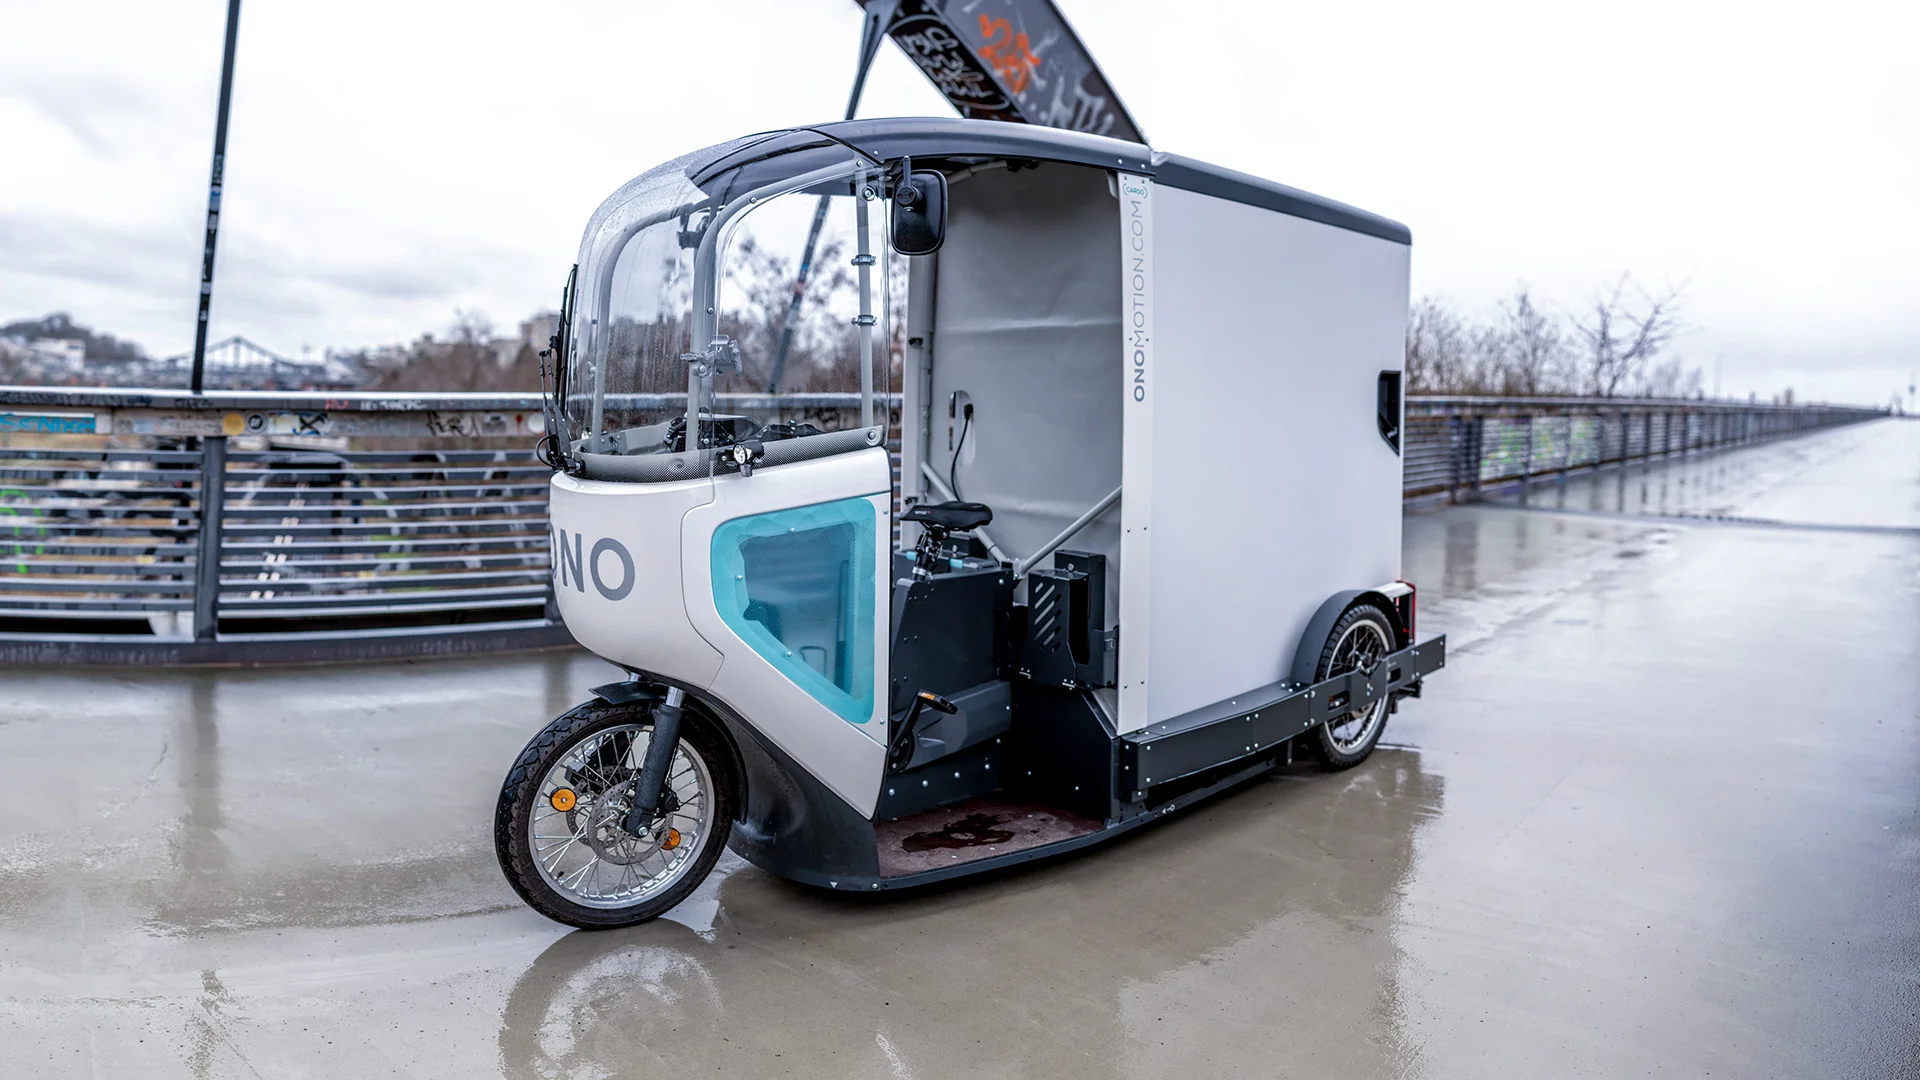 Ono E Cargo Bike Aims to Revolutionize Urban Transportation